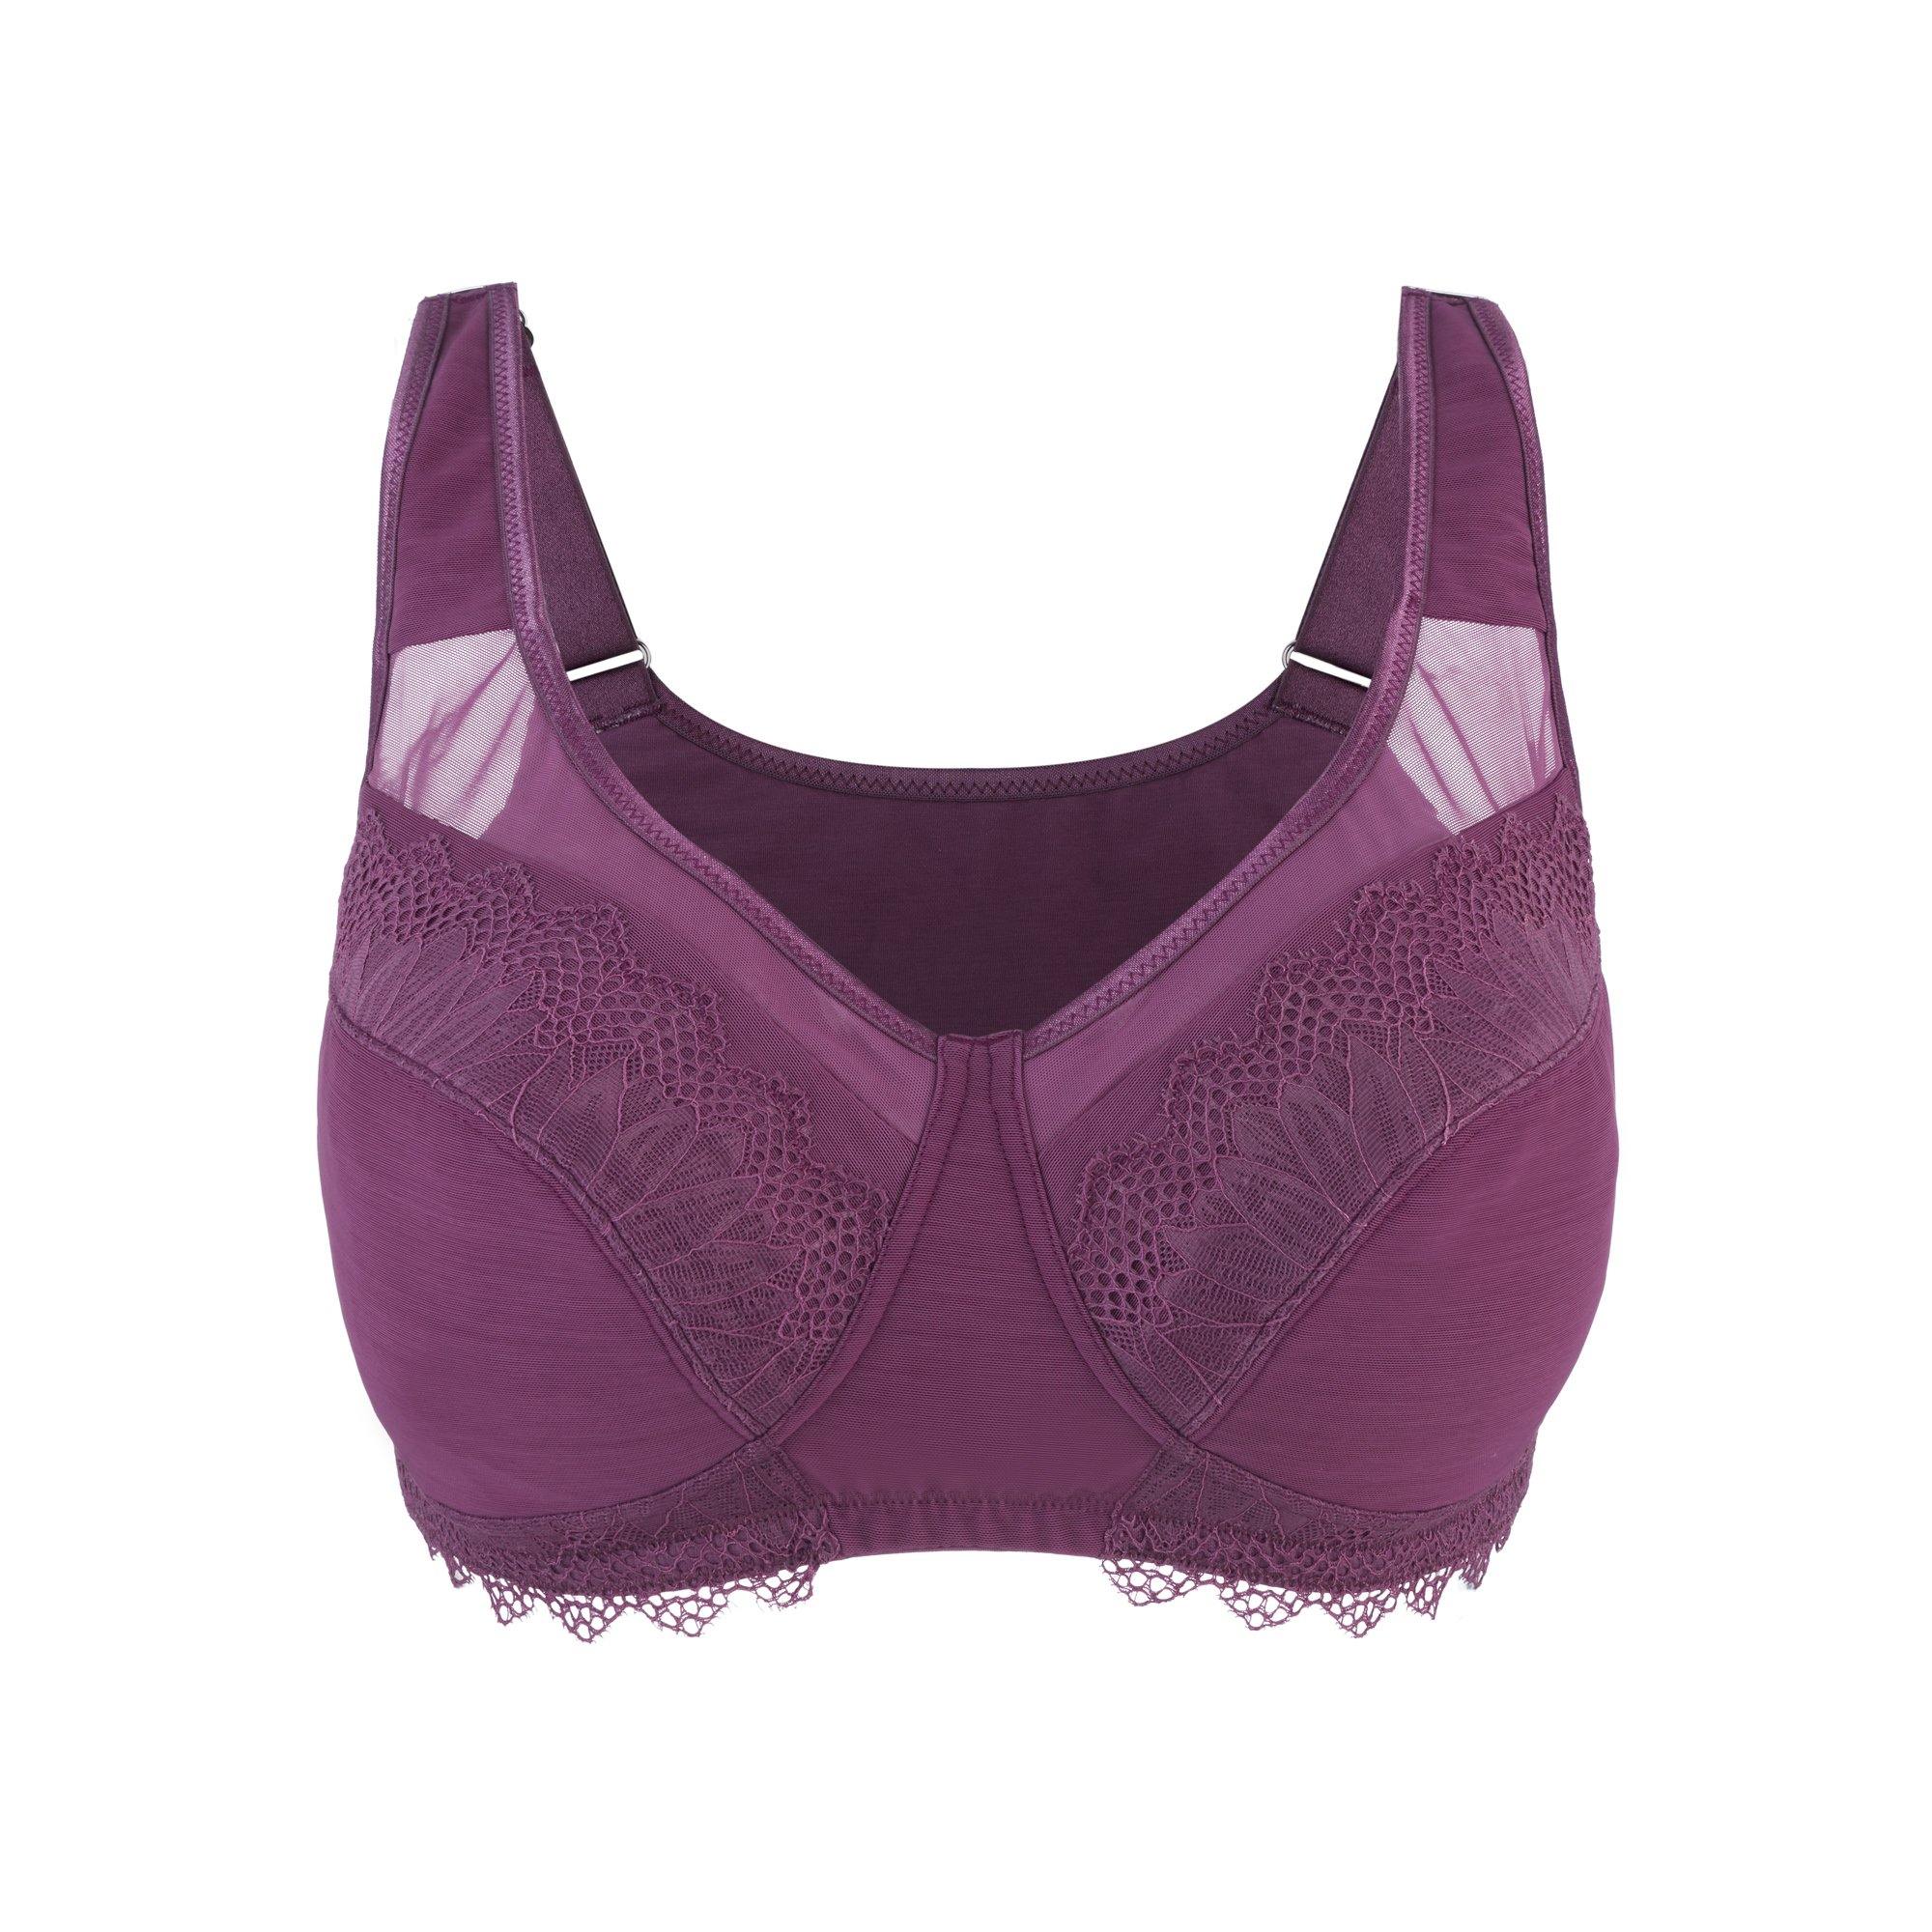 Pimfylm Underoutfit Bras For Women Women'S Sports Bras Cotton Bras For  Women Purple 40